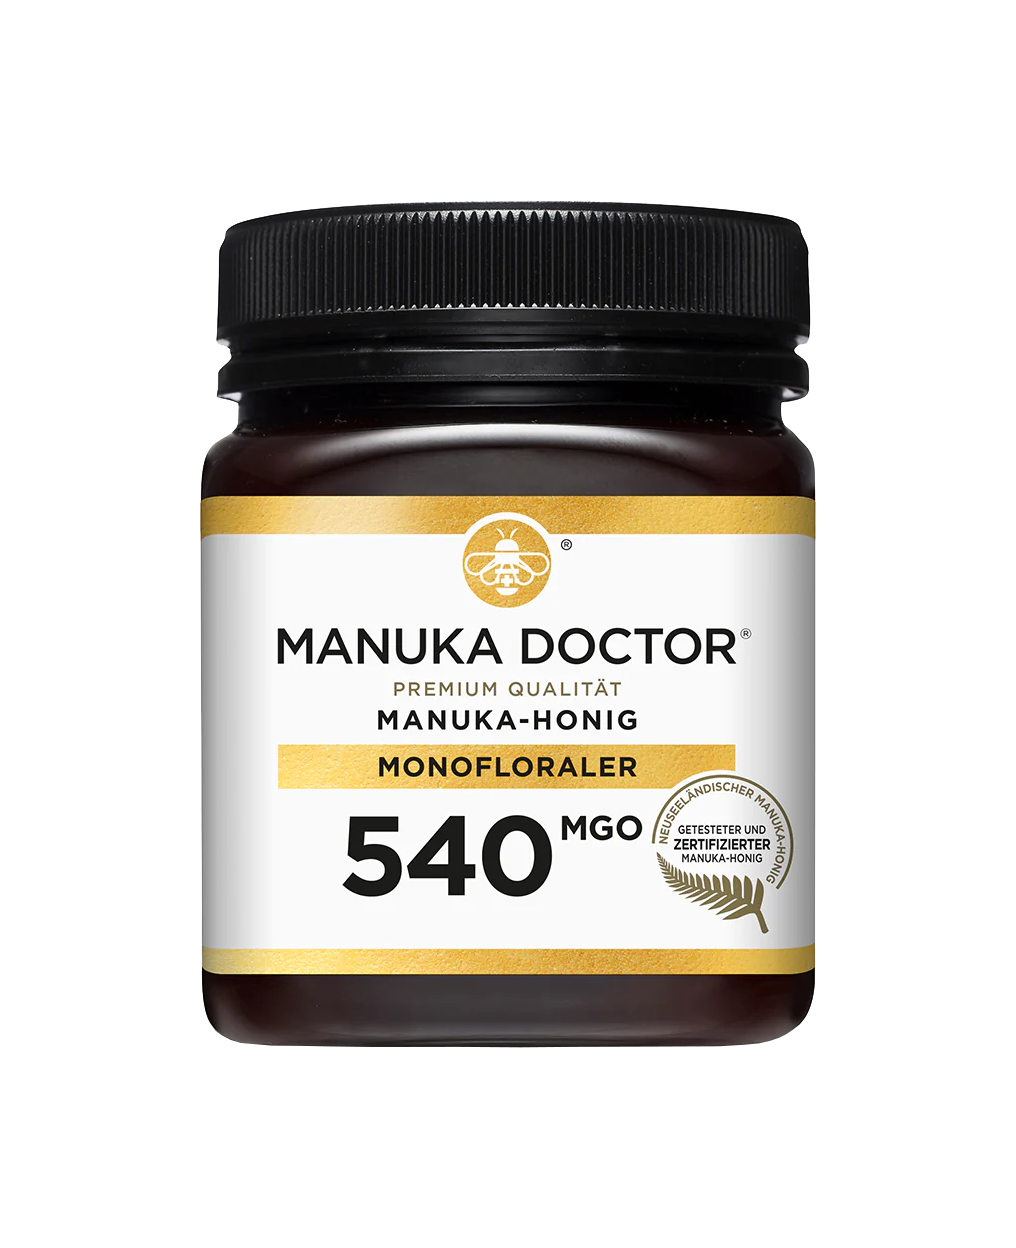 Manuka Doctor mit 540 MGO